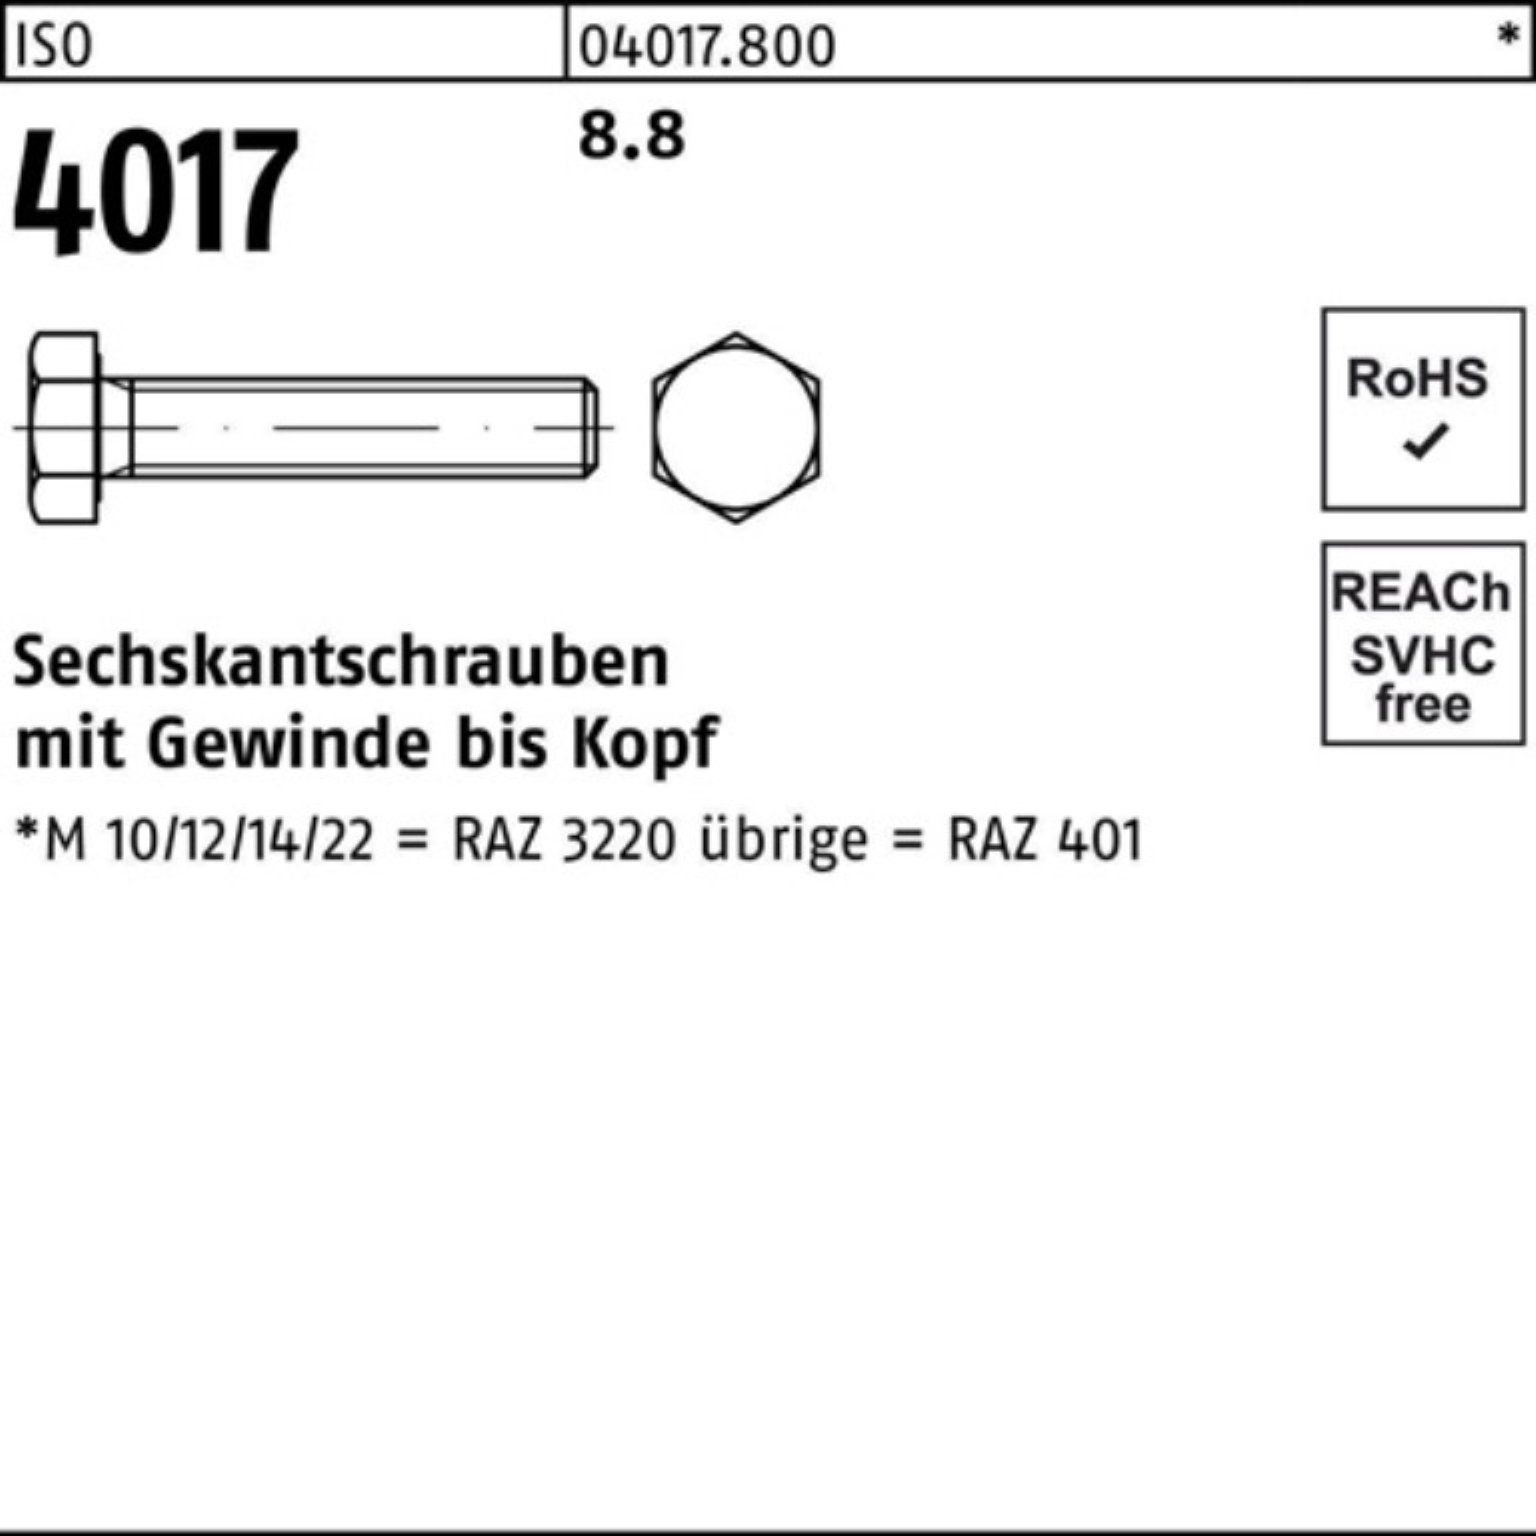 4017 18 VG ISO Bufab Pack ISO Sechskantschraube M6x 500er Stück 500 Sechskantschraube 8.8 401